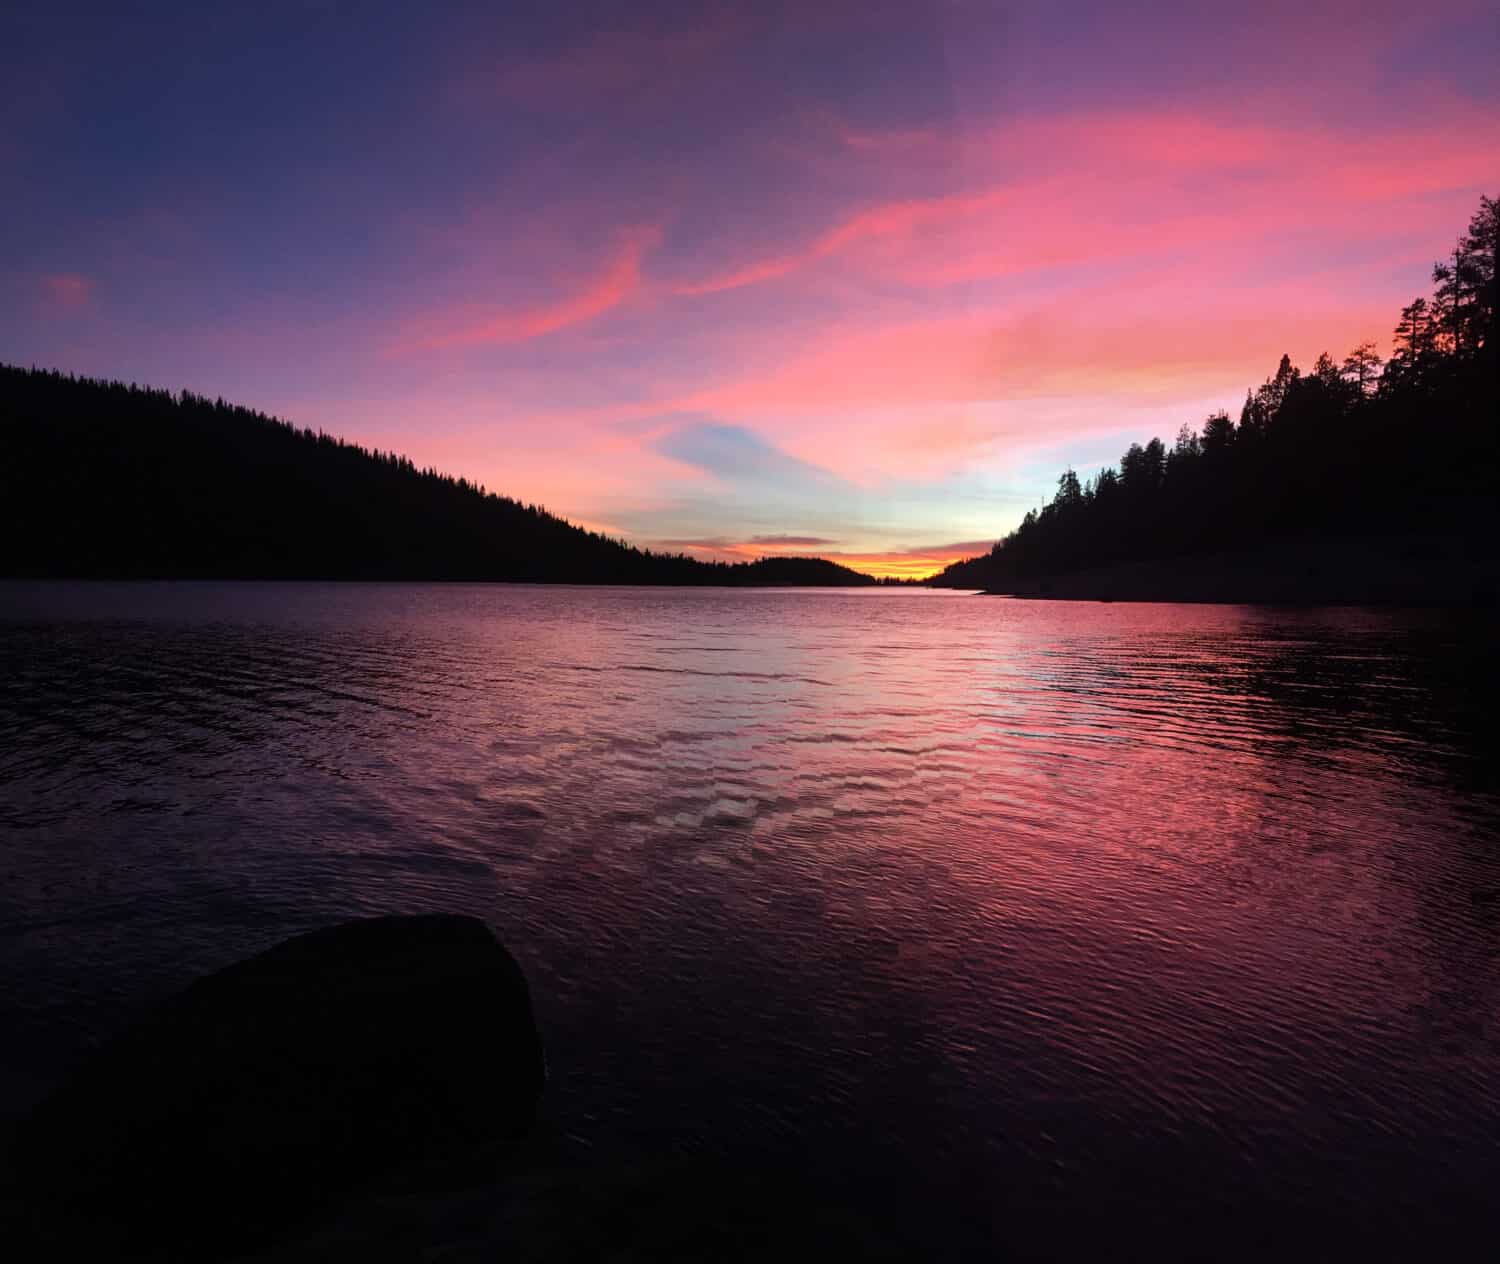 Sunset at Shaver Lake, CA